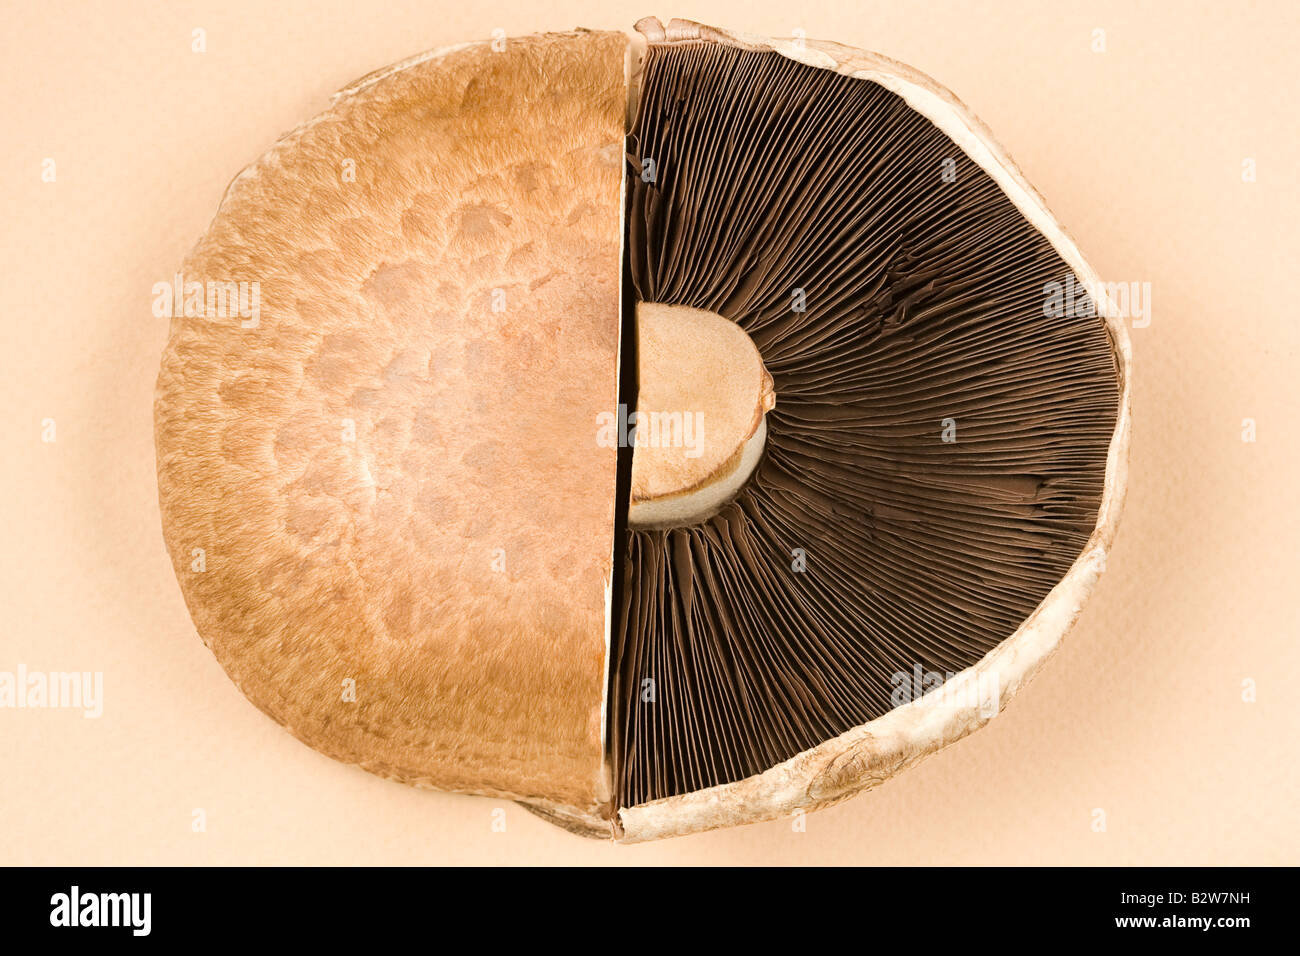 Cut mushroom Stock Photo